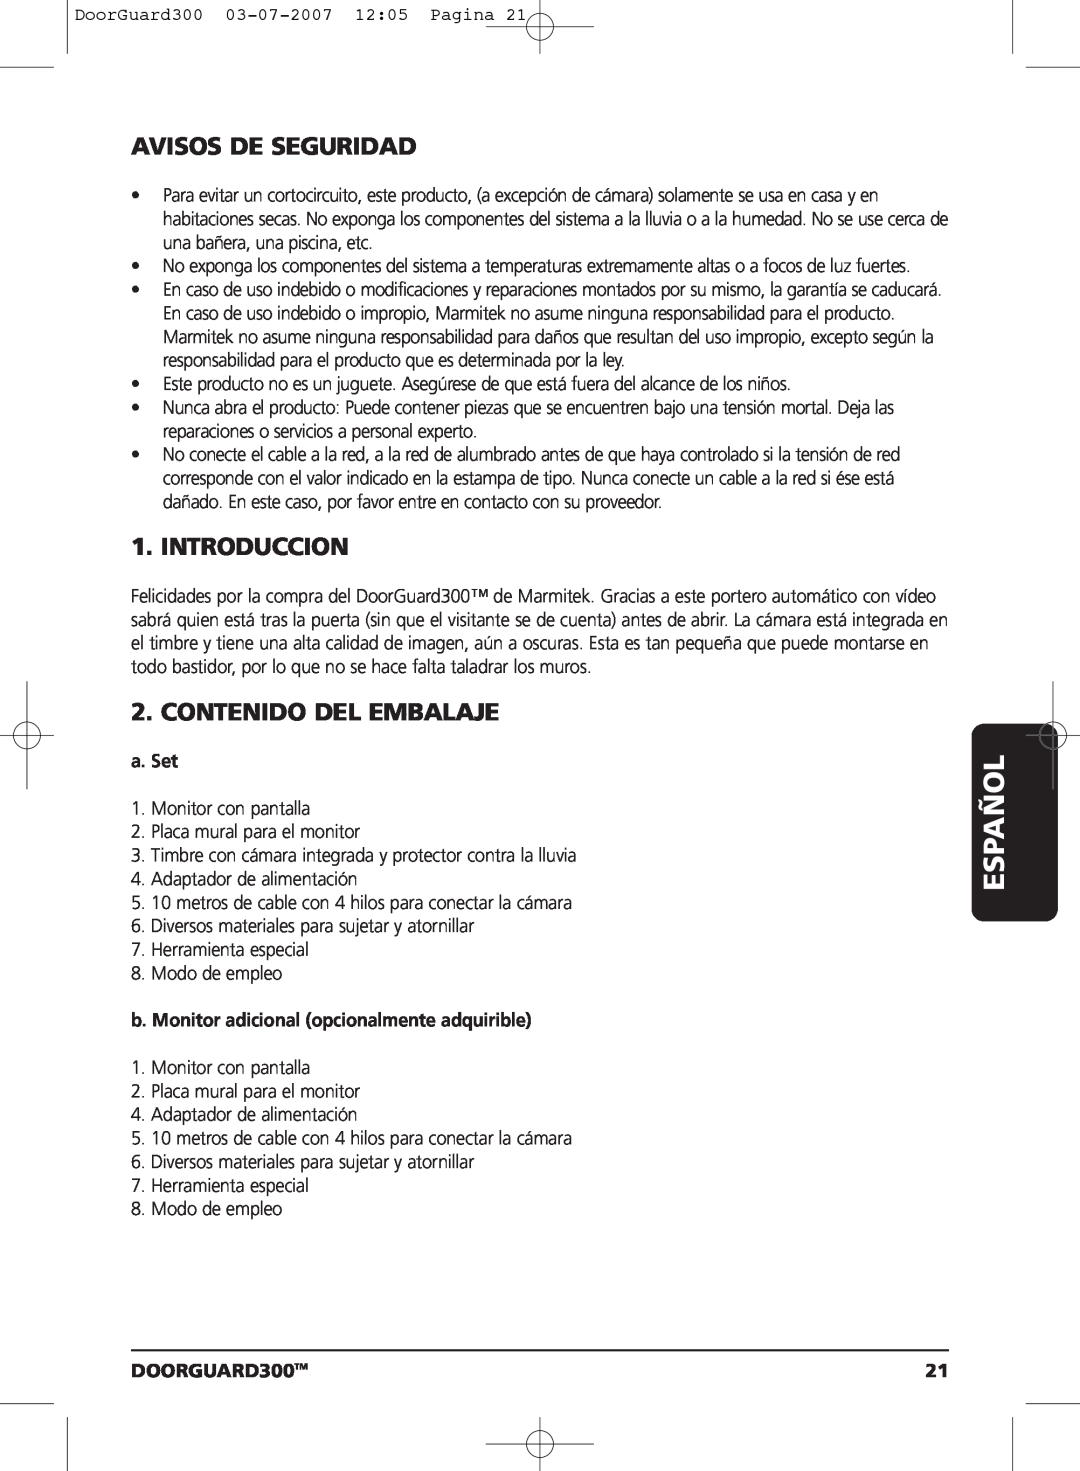 Marmitek DOORGUARD300TM user manual Español, Avisos De Seguridad, Introduccion, Contenido Del Embalaje, a. Set 